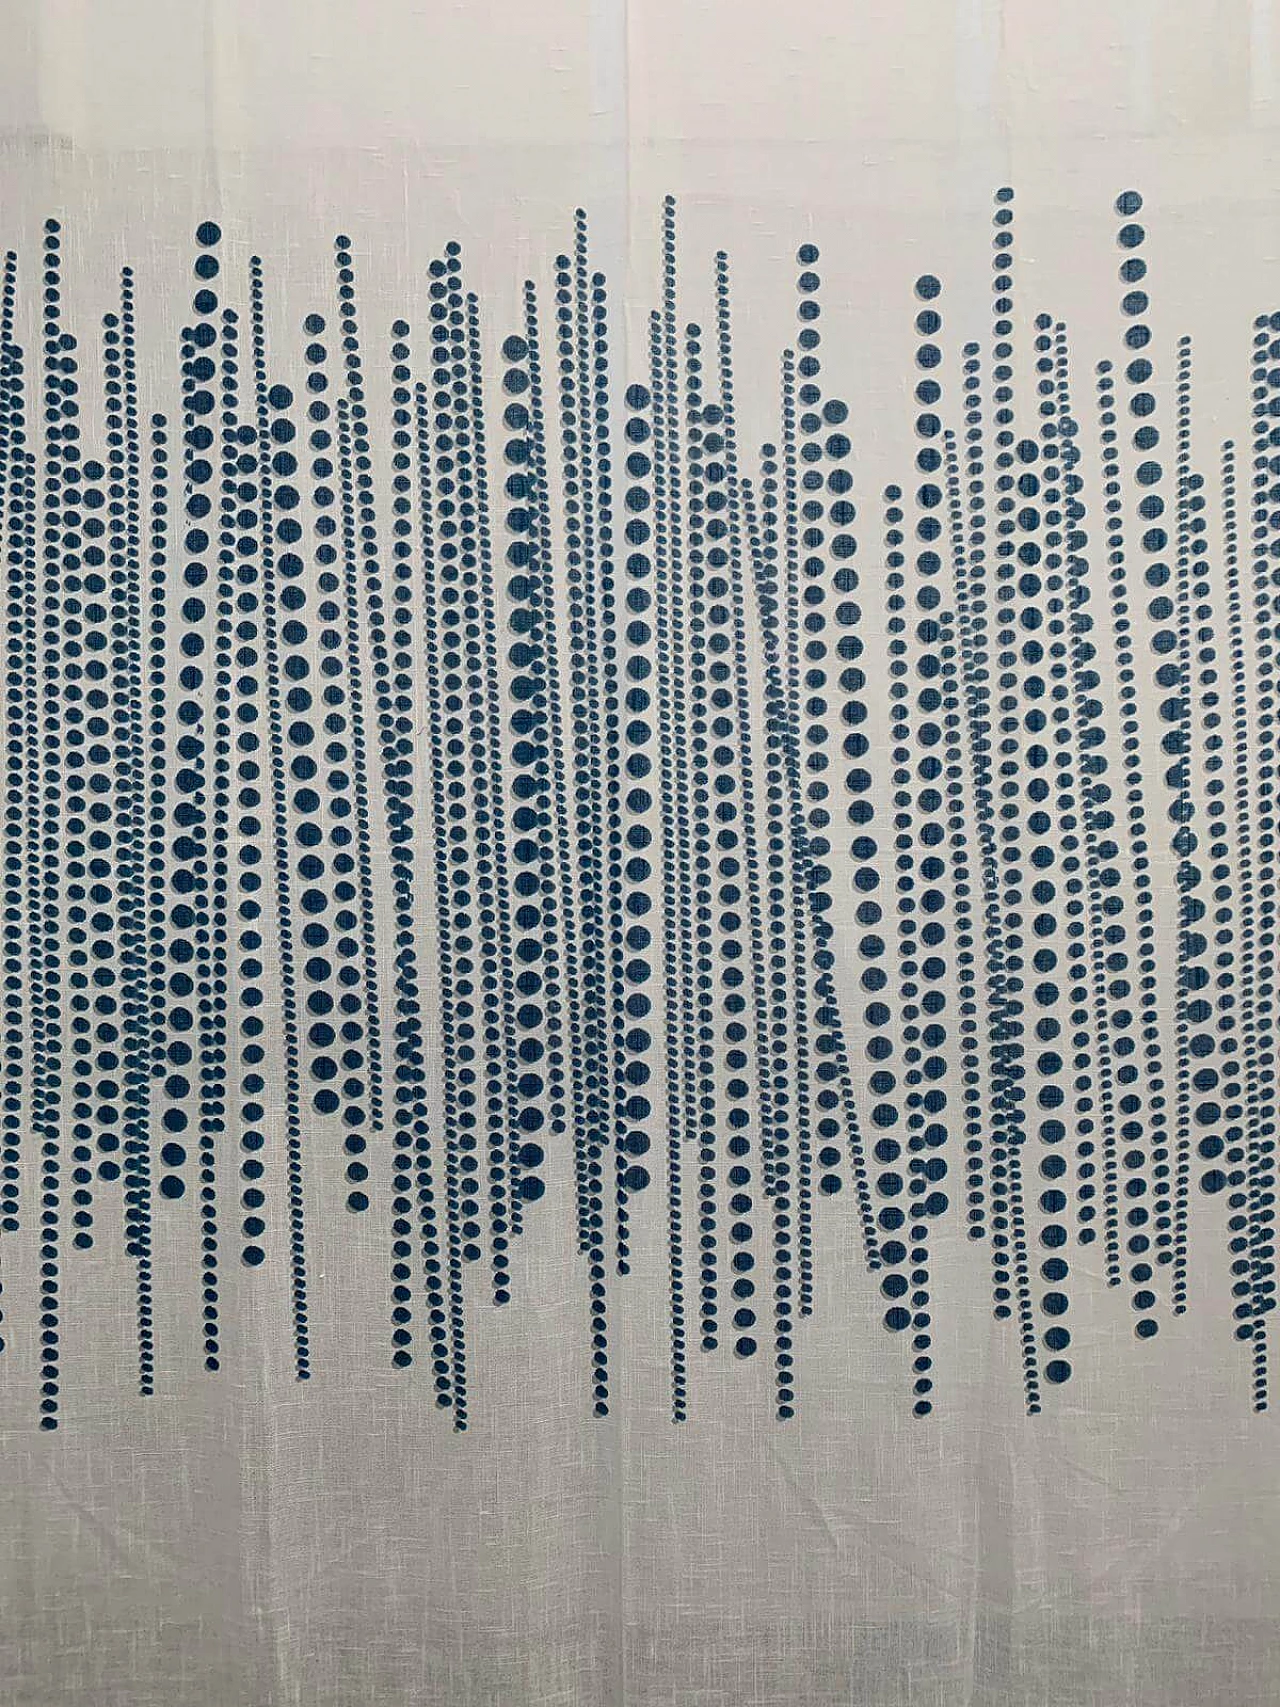 Fabric divider by Silvio Coppola for Tessitura di Mompiano, 1970s 1139353